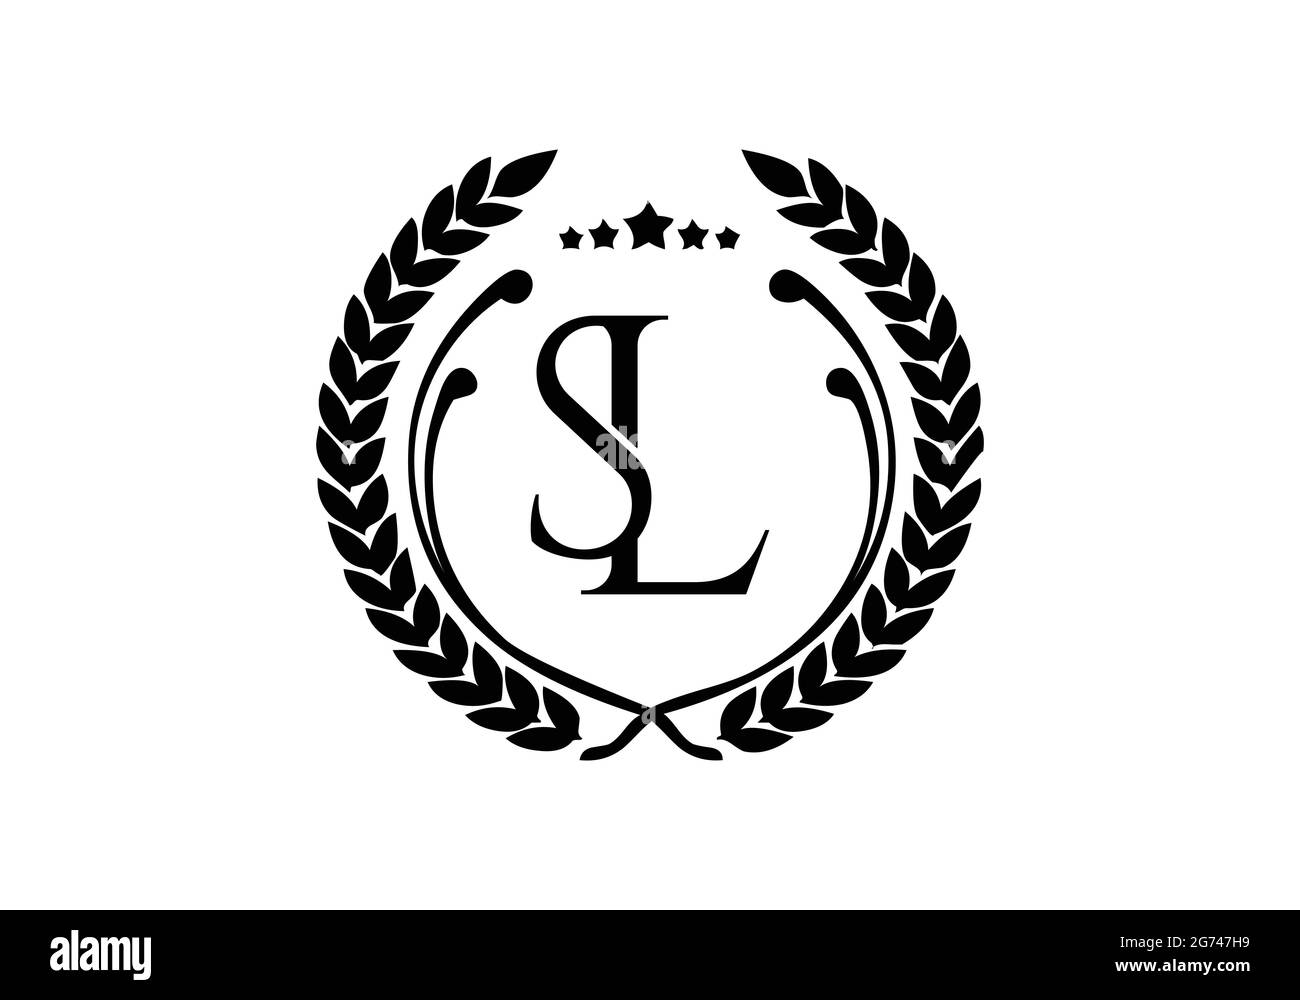 Initial Monogram Letter SL Logo Design Vector Template S L Letter Logo Design Minimalist SL Lettermark Logo for Multi-used Stock Vector